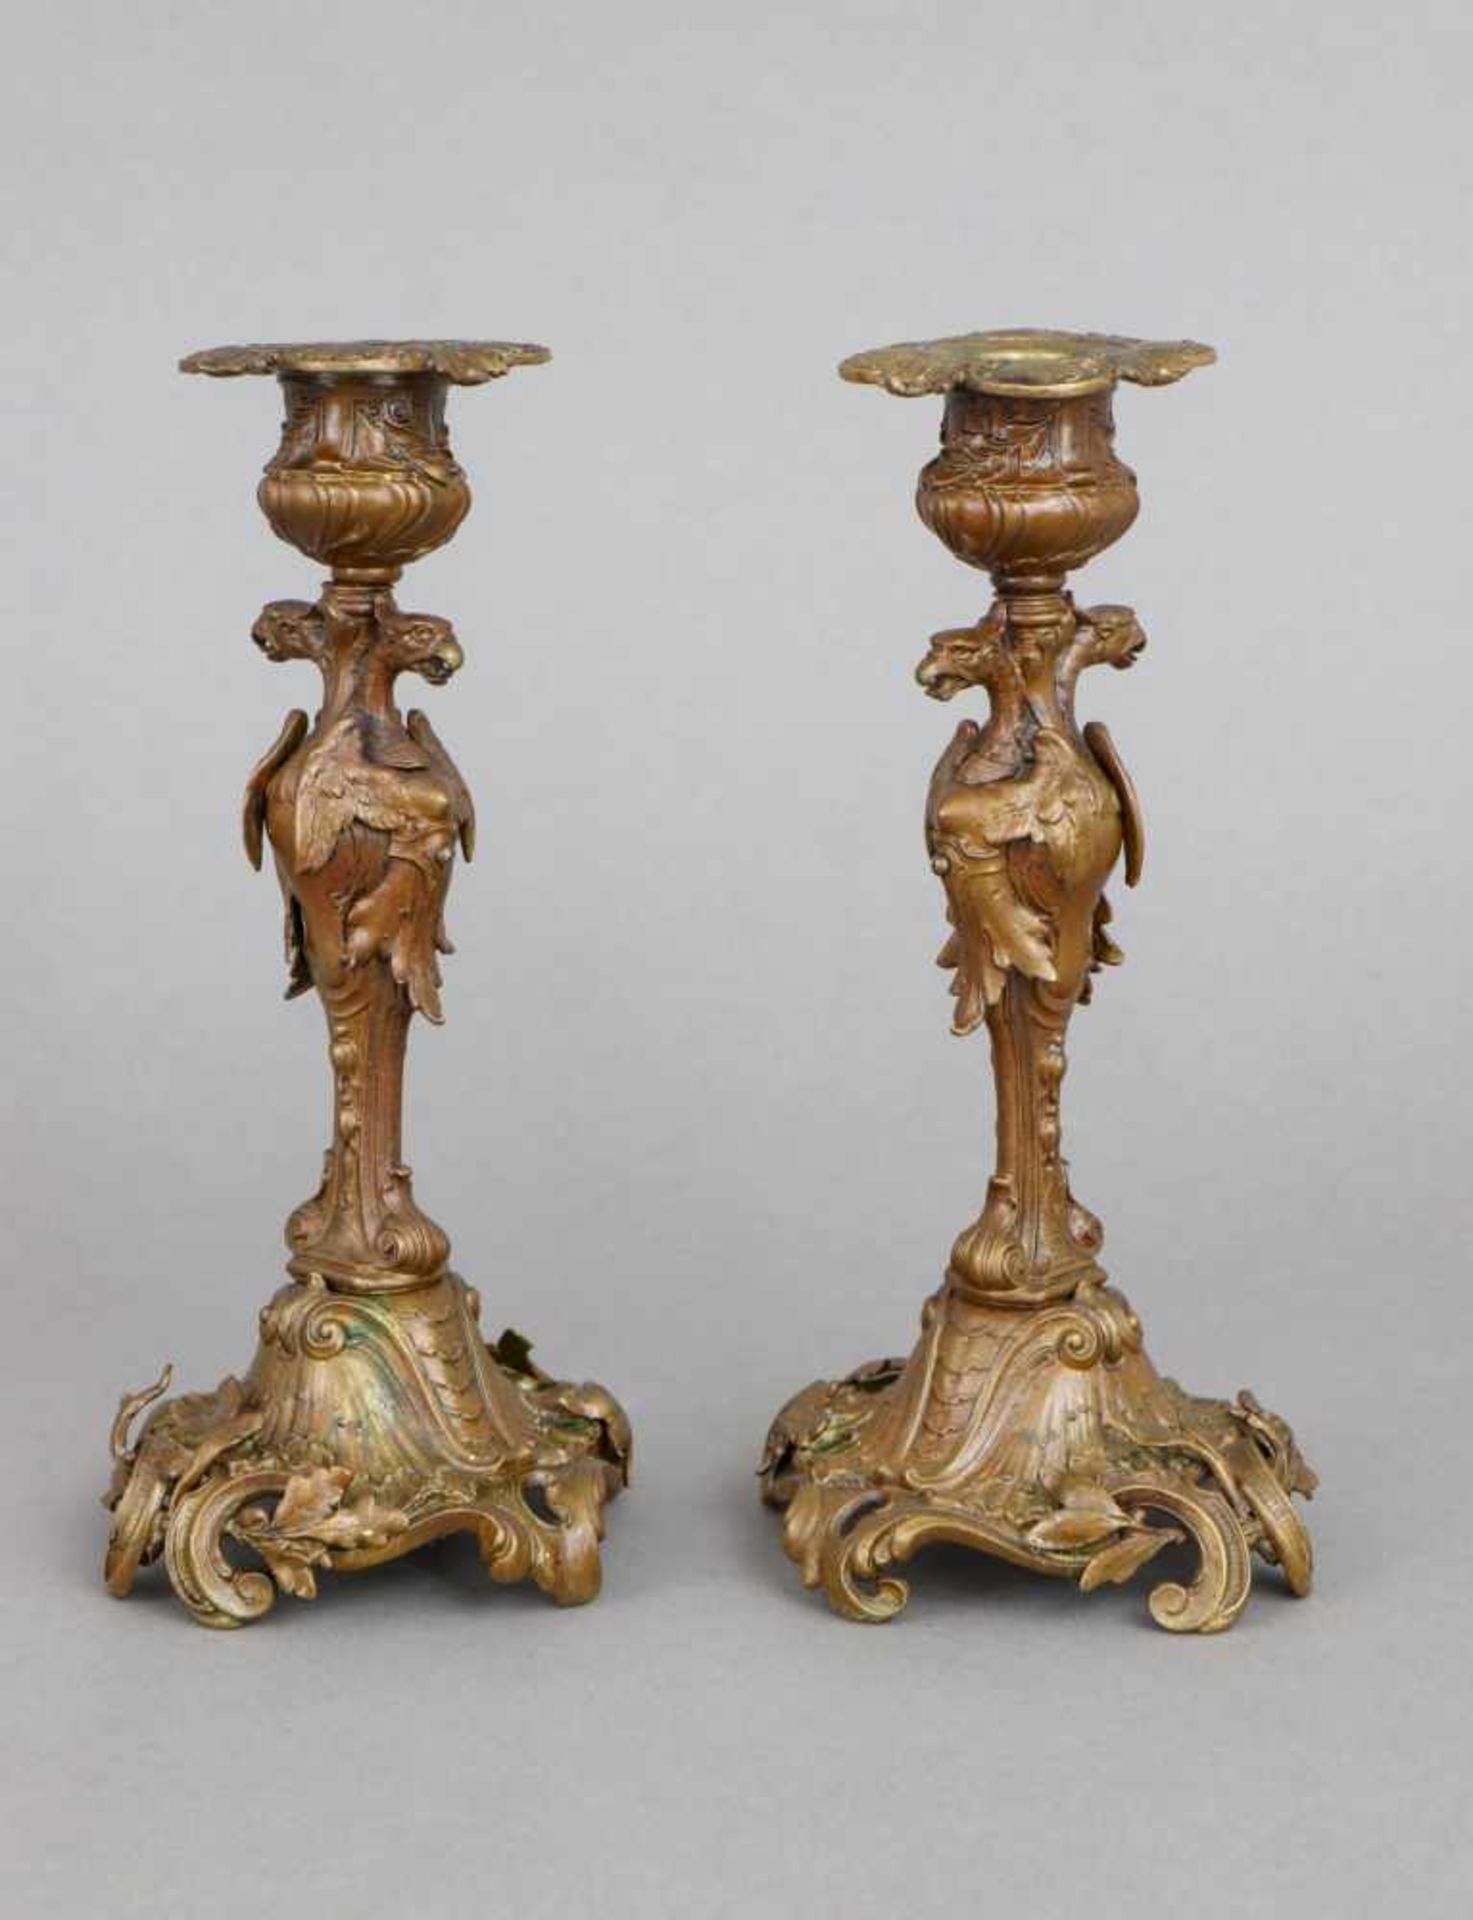 Paar Tischleuchter im Stile des EmpireBronze, Frankreich, Napoleon III. (2. Hälfte 19. Jhdt.), - Bild 2 aus 2